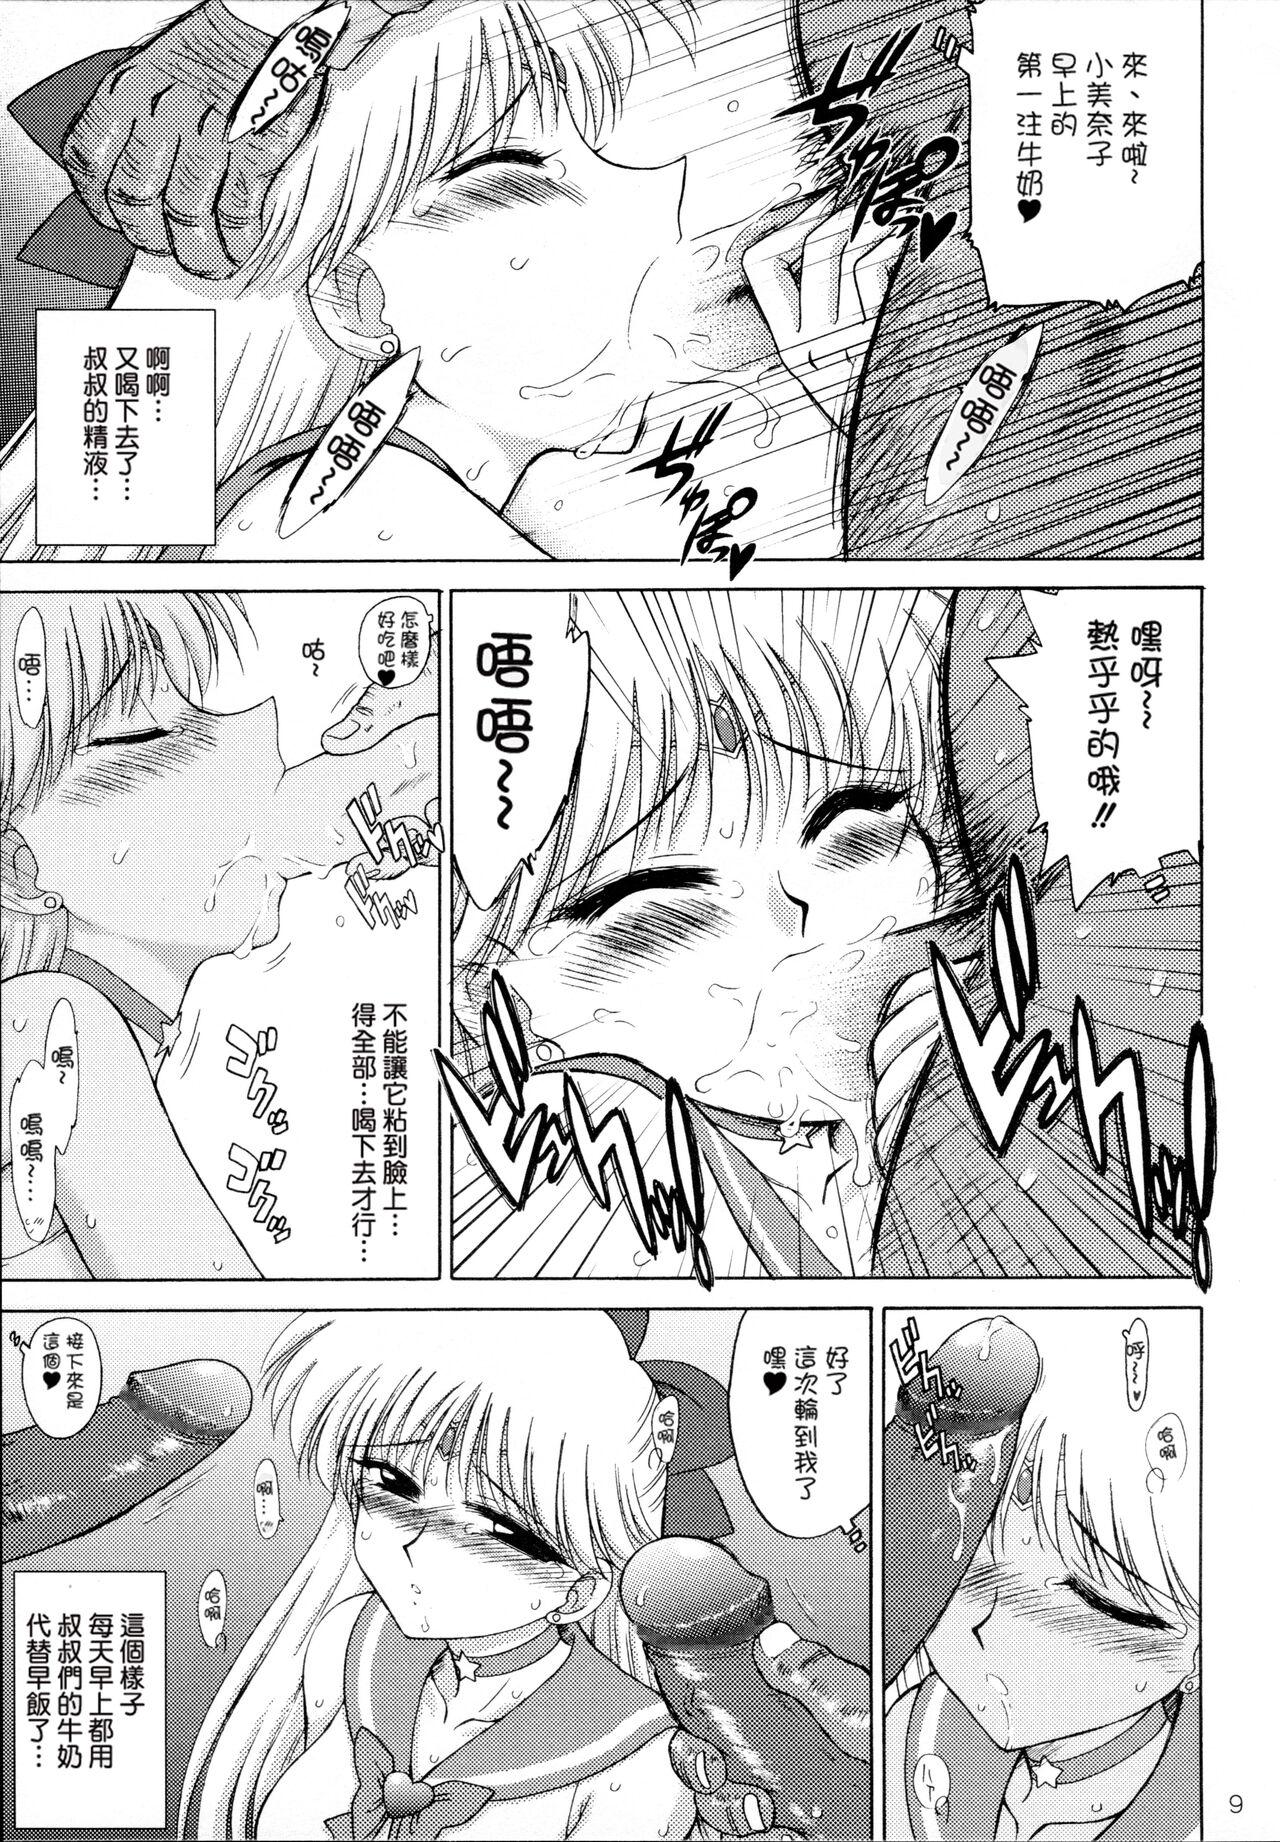 Couples Fucking Super Fly - Sailor moon | bishoujo senshi sailor moon Rubbing - Page 9